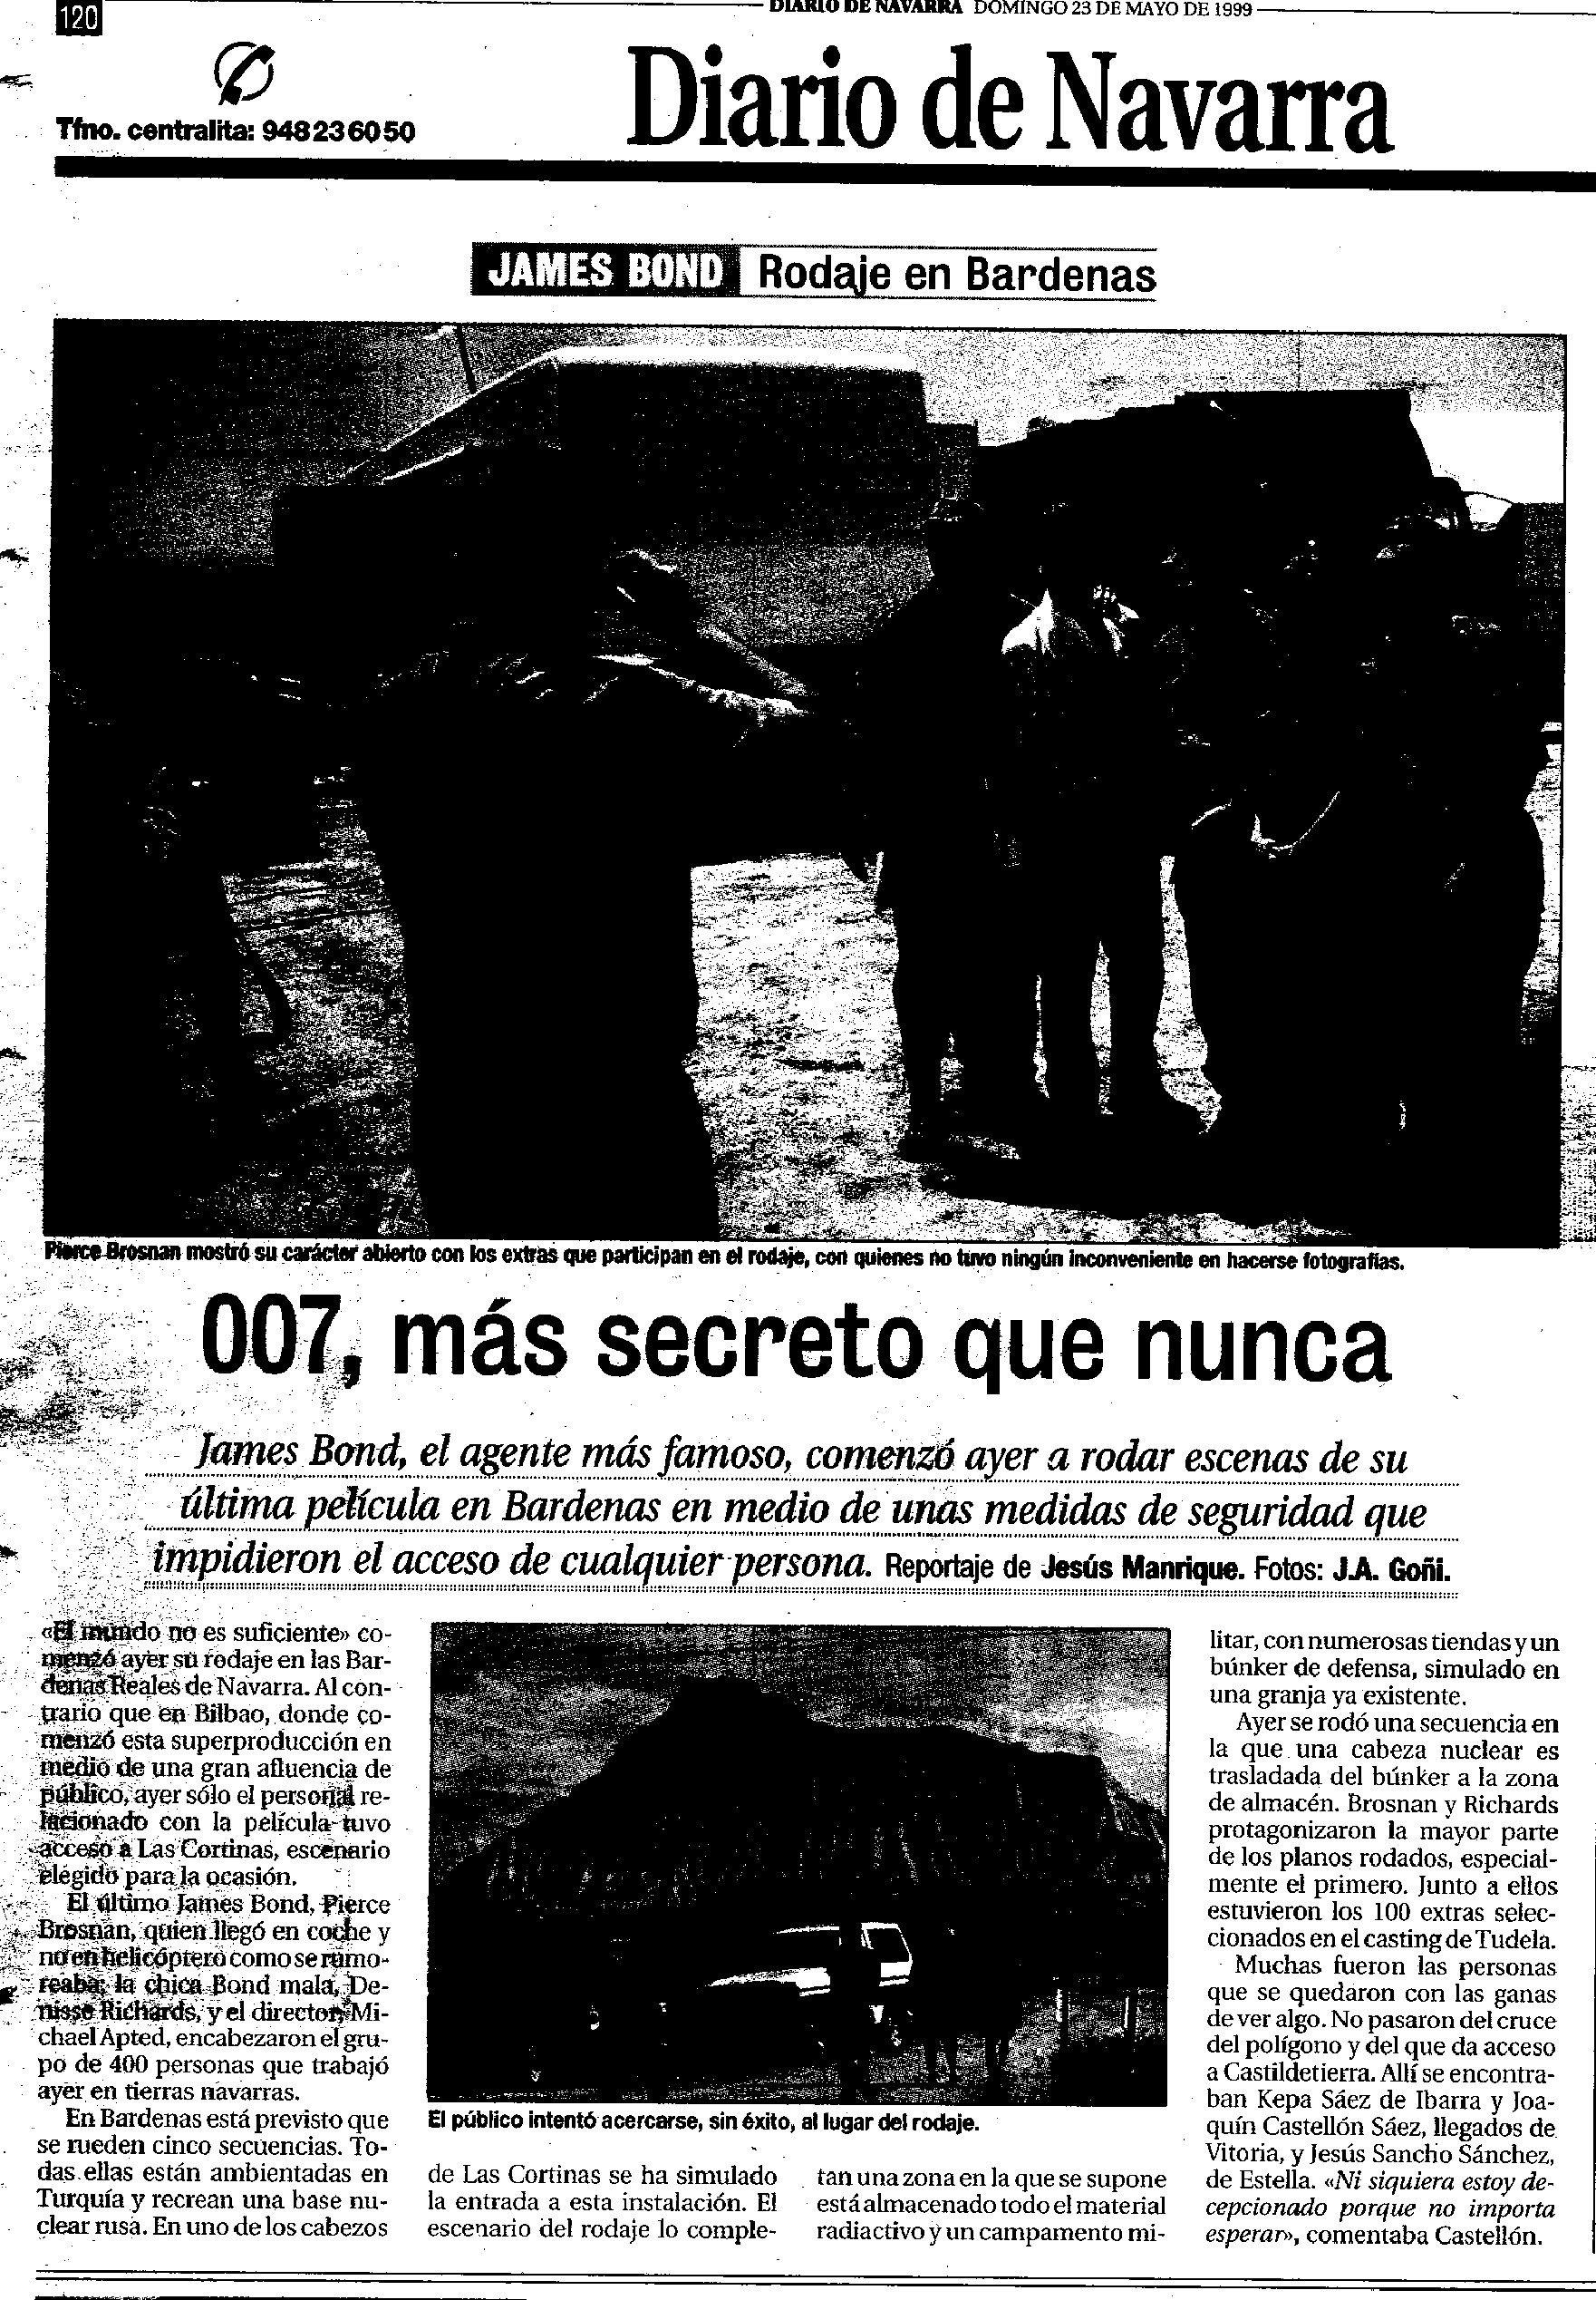 19 1999 05 23 Diario de Navarra 120 Rodaje Bardenas